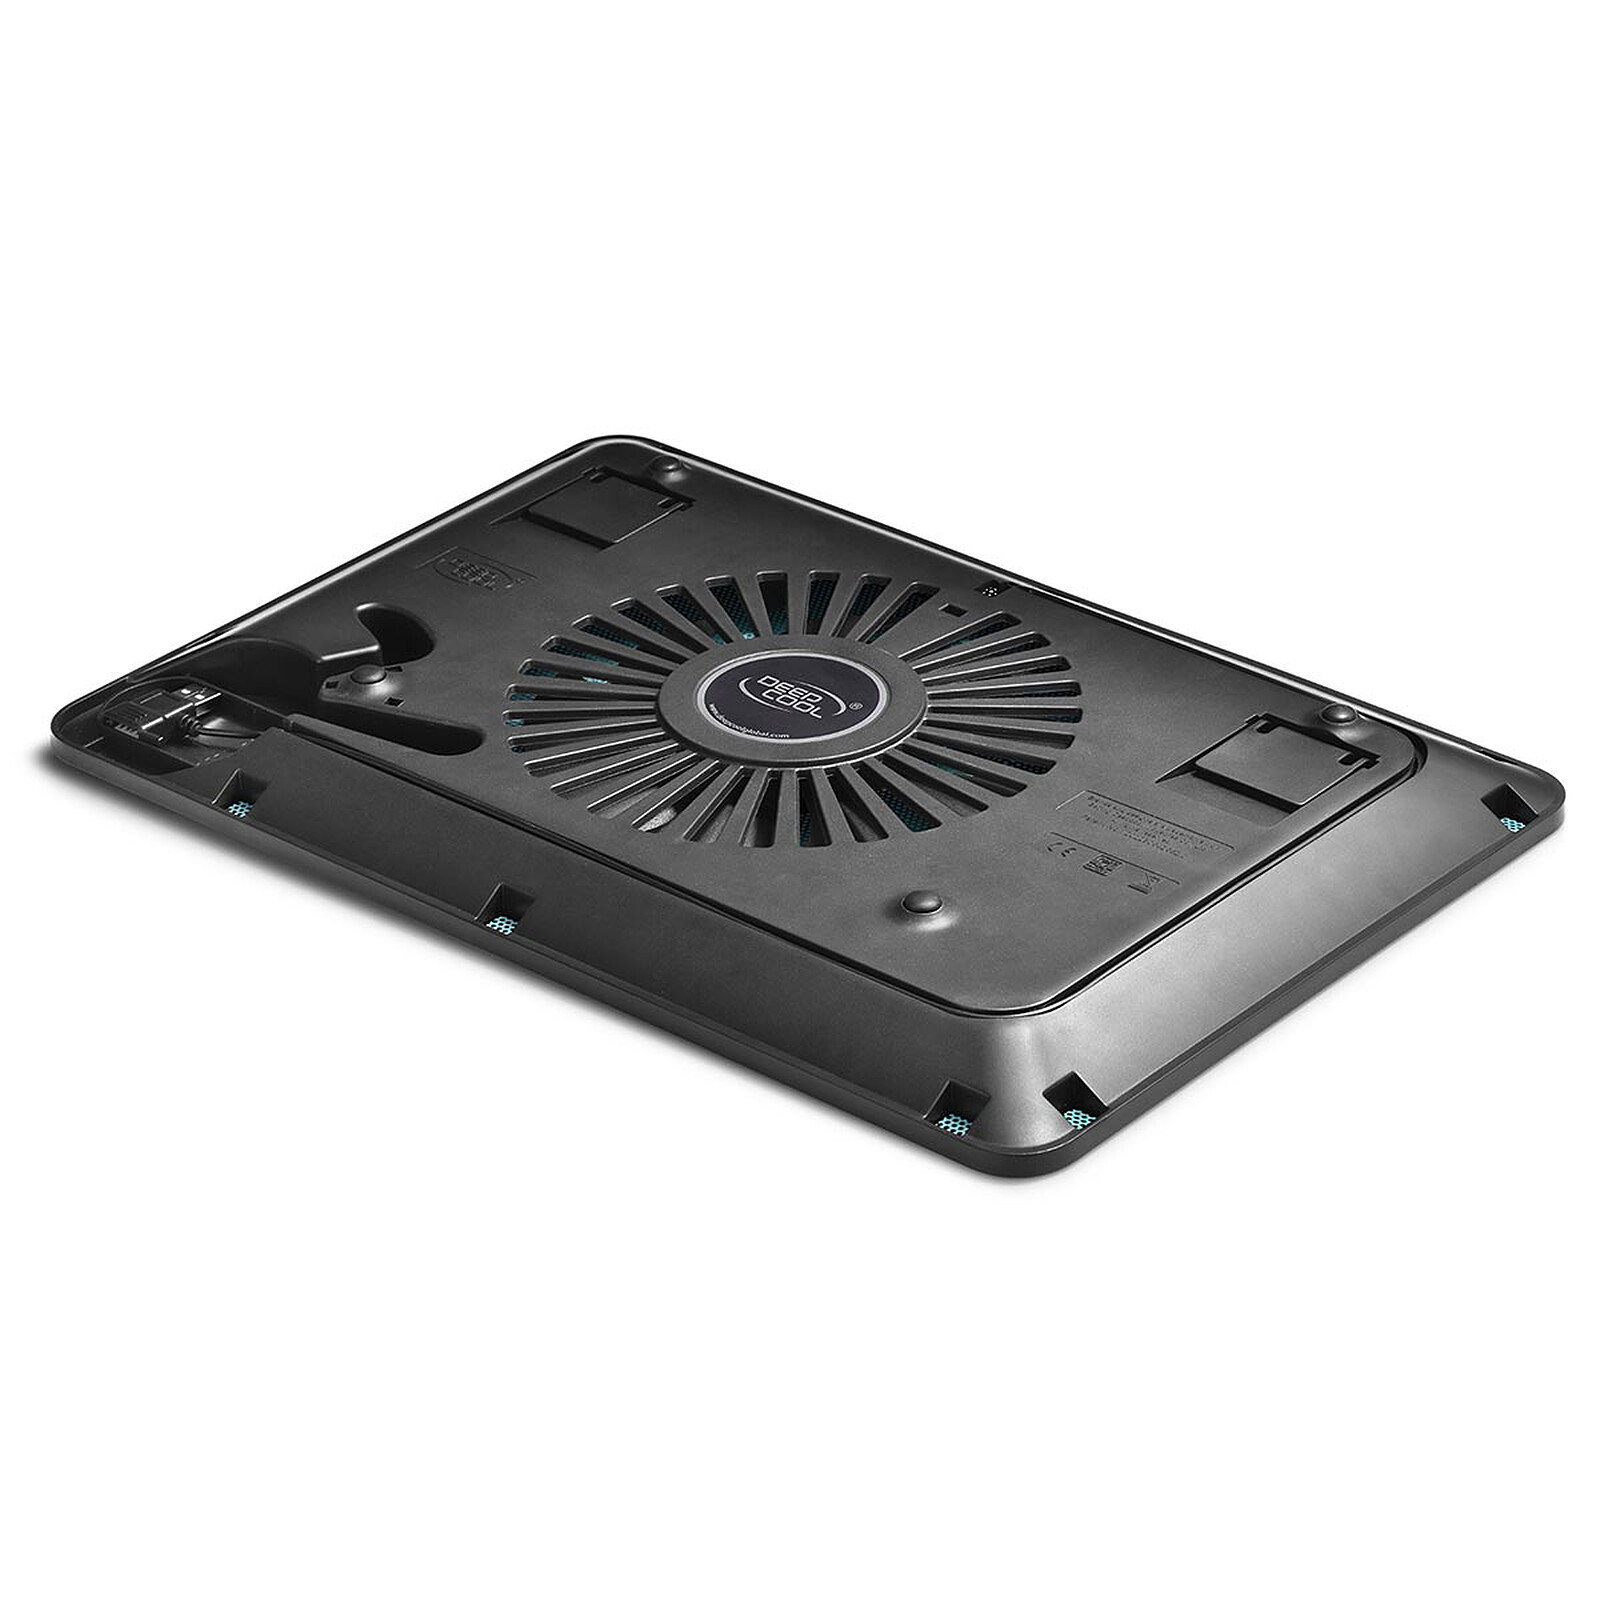 Heden Support ventilé PC 17 - Ventilateur PC portable - Garantie